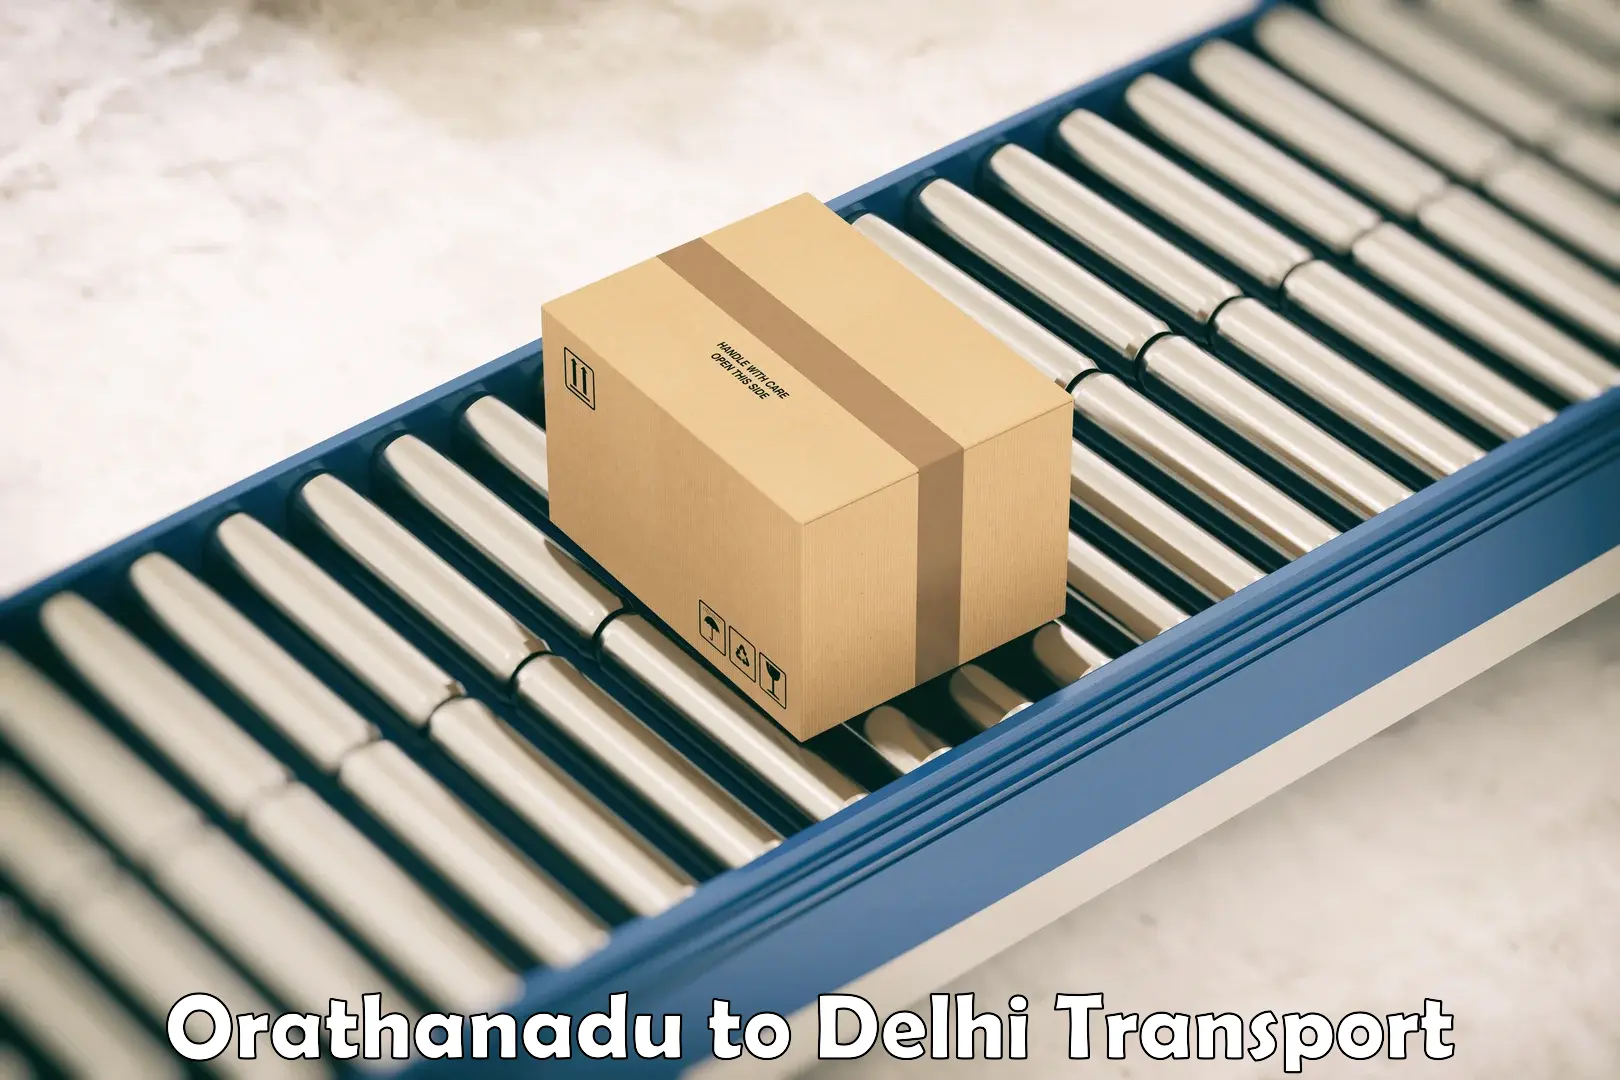 Online transport service Orathanadu to Delhi